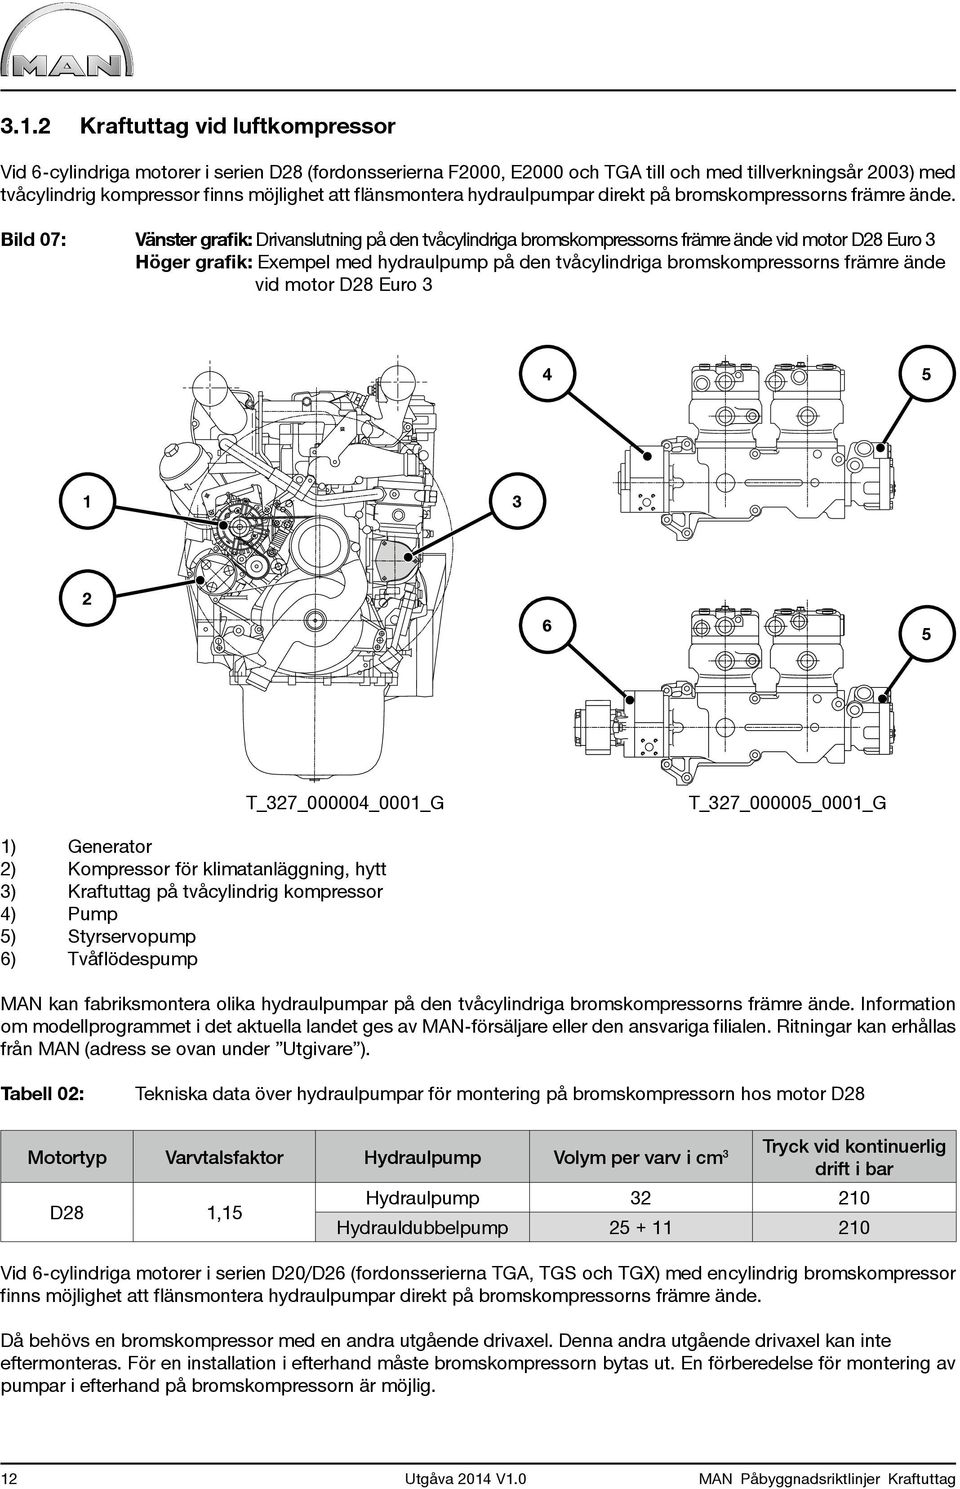 Bild 07: Vänster grafik: Drivanslutning på den tvåcylindriga bromskompressorns främre ände vid motor D28 Euro 3 Höger grafik: Exempel med hydraulpump på den tvåcylindriga bromskompressorns främre